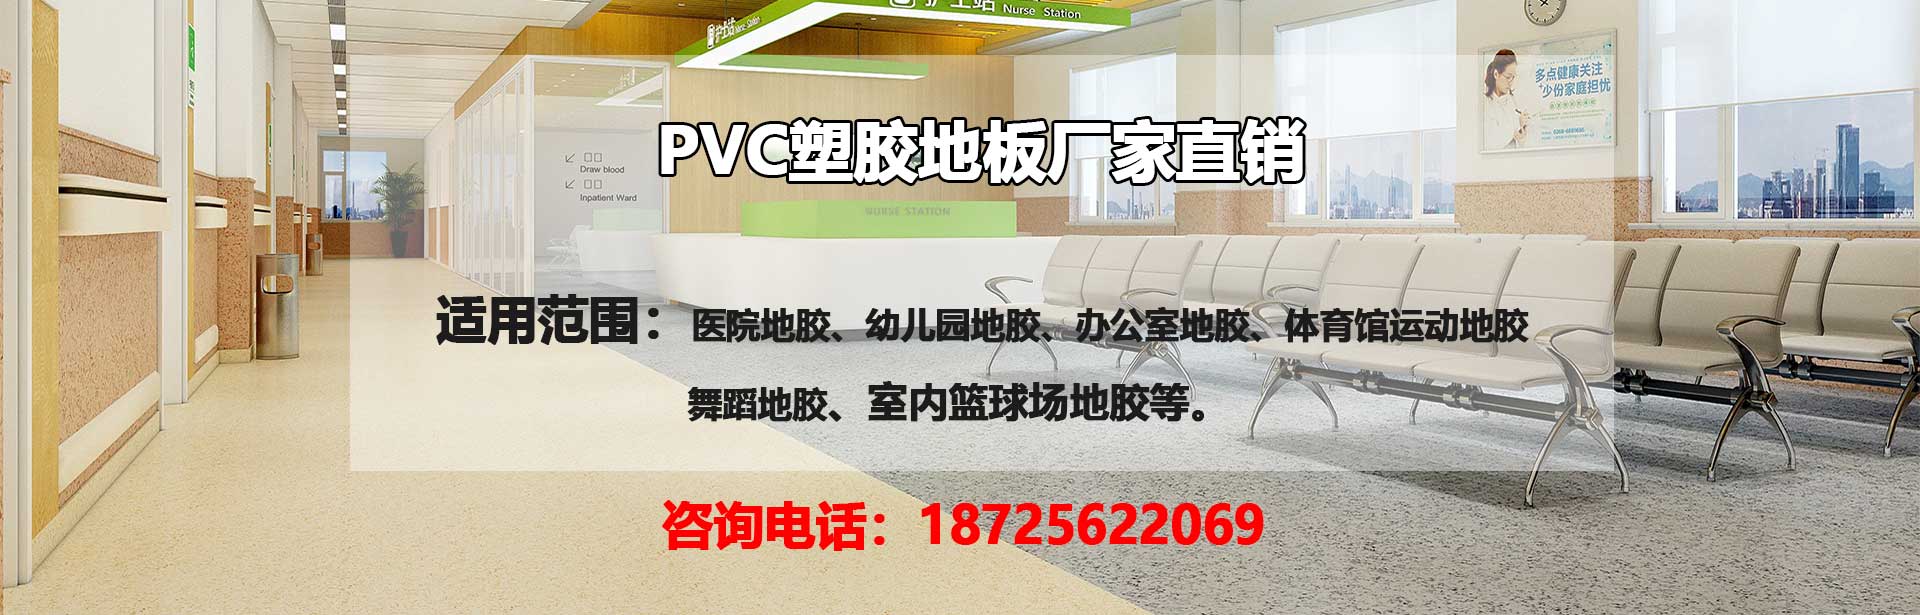 酒泉PVC塑胶地板